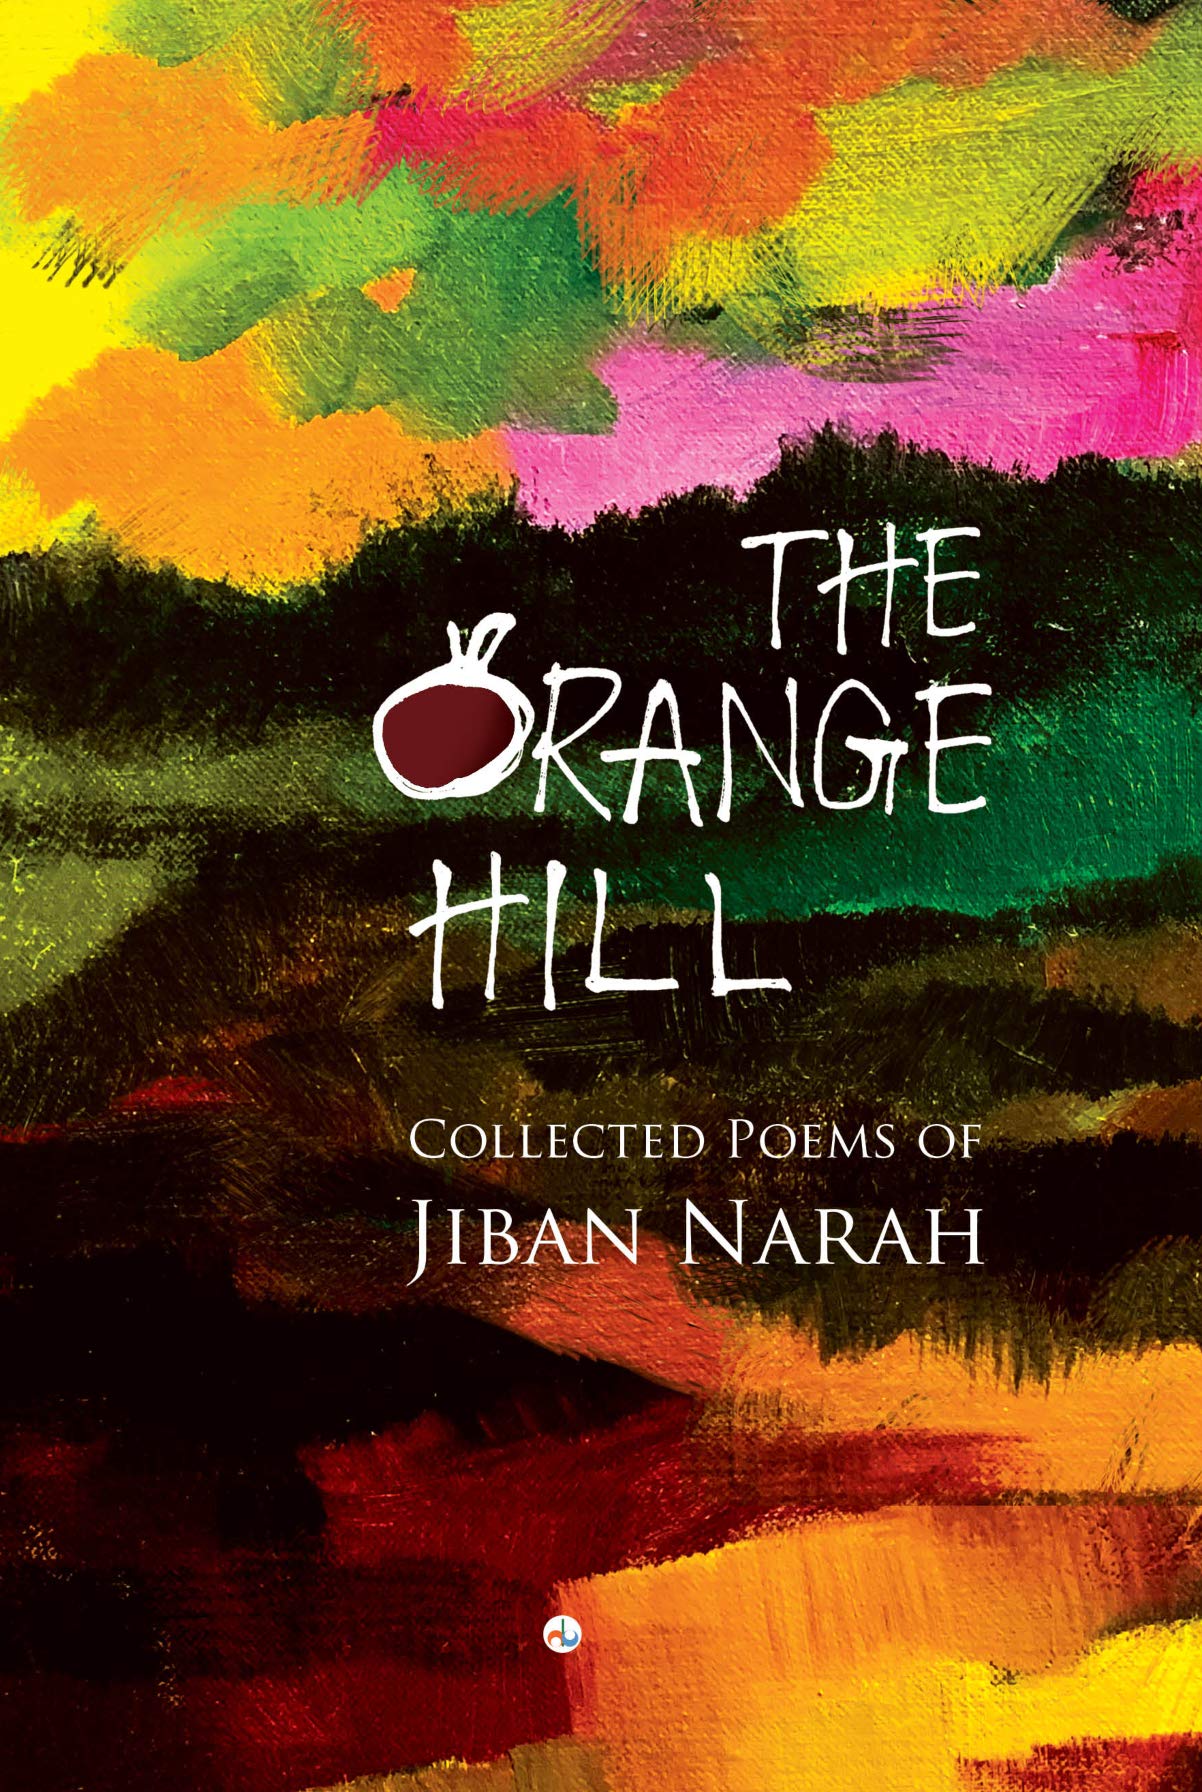 The Orange Hill